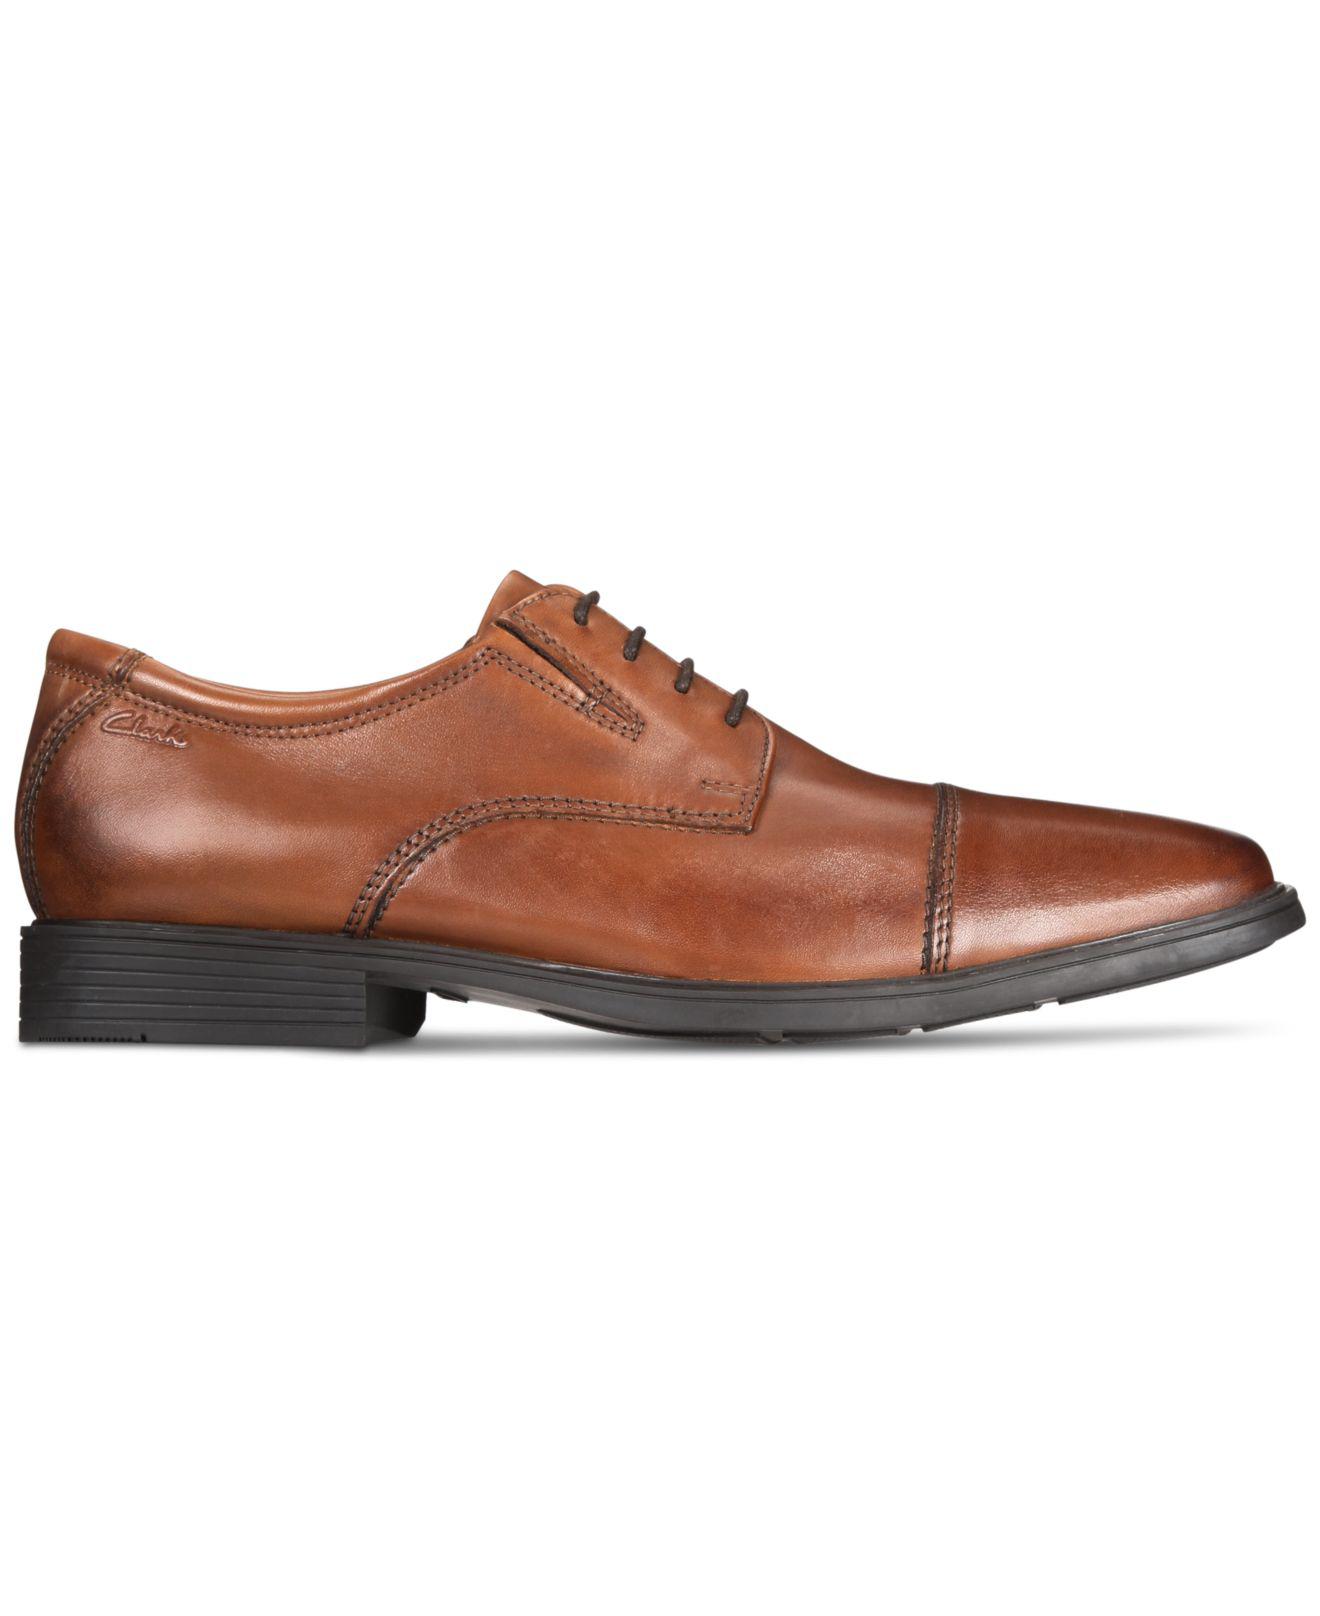 D Clarks Mens Tilden Cap Tan Leather Lace-Up Oxfords Shoes 7 Medium BHFO 7636 